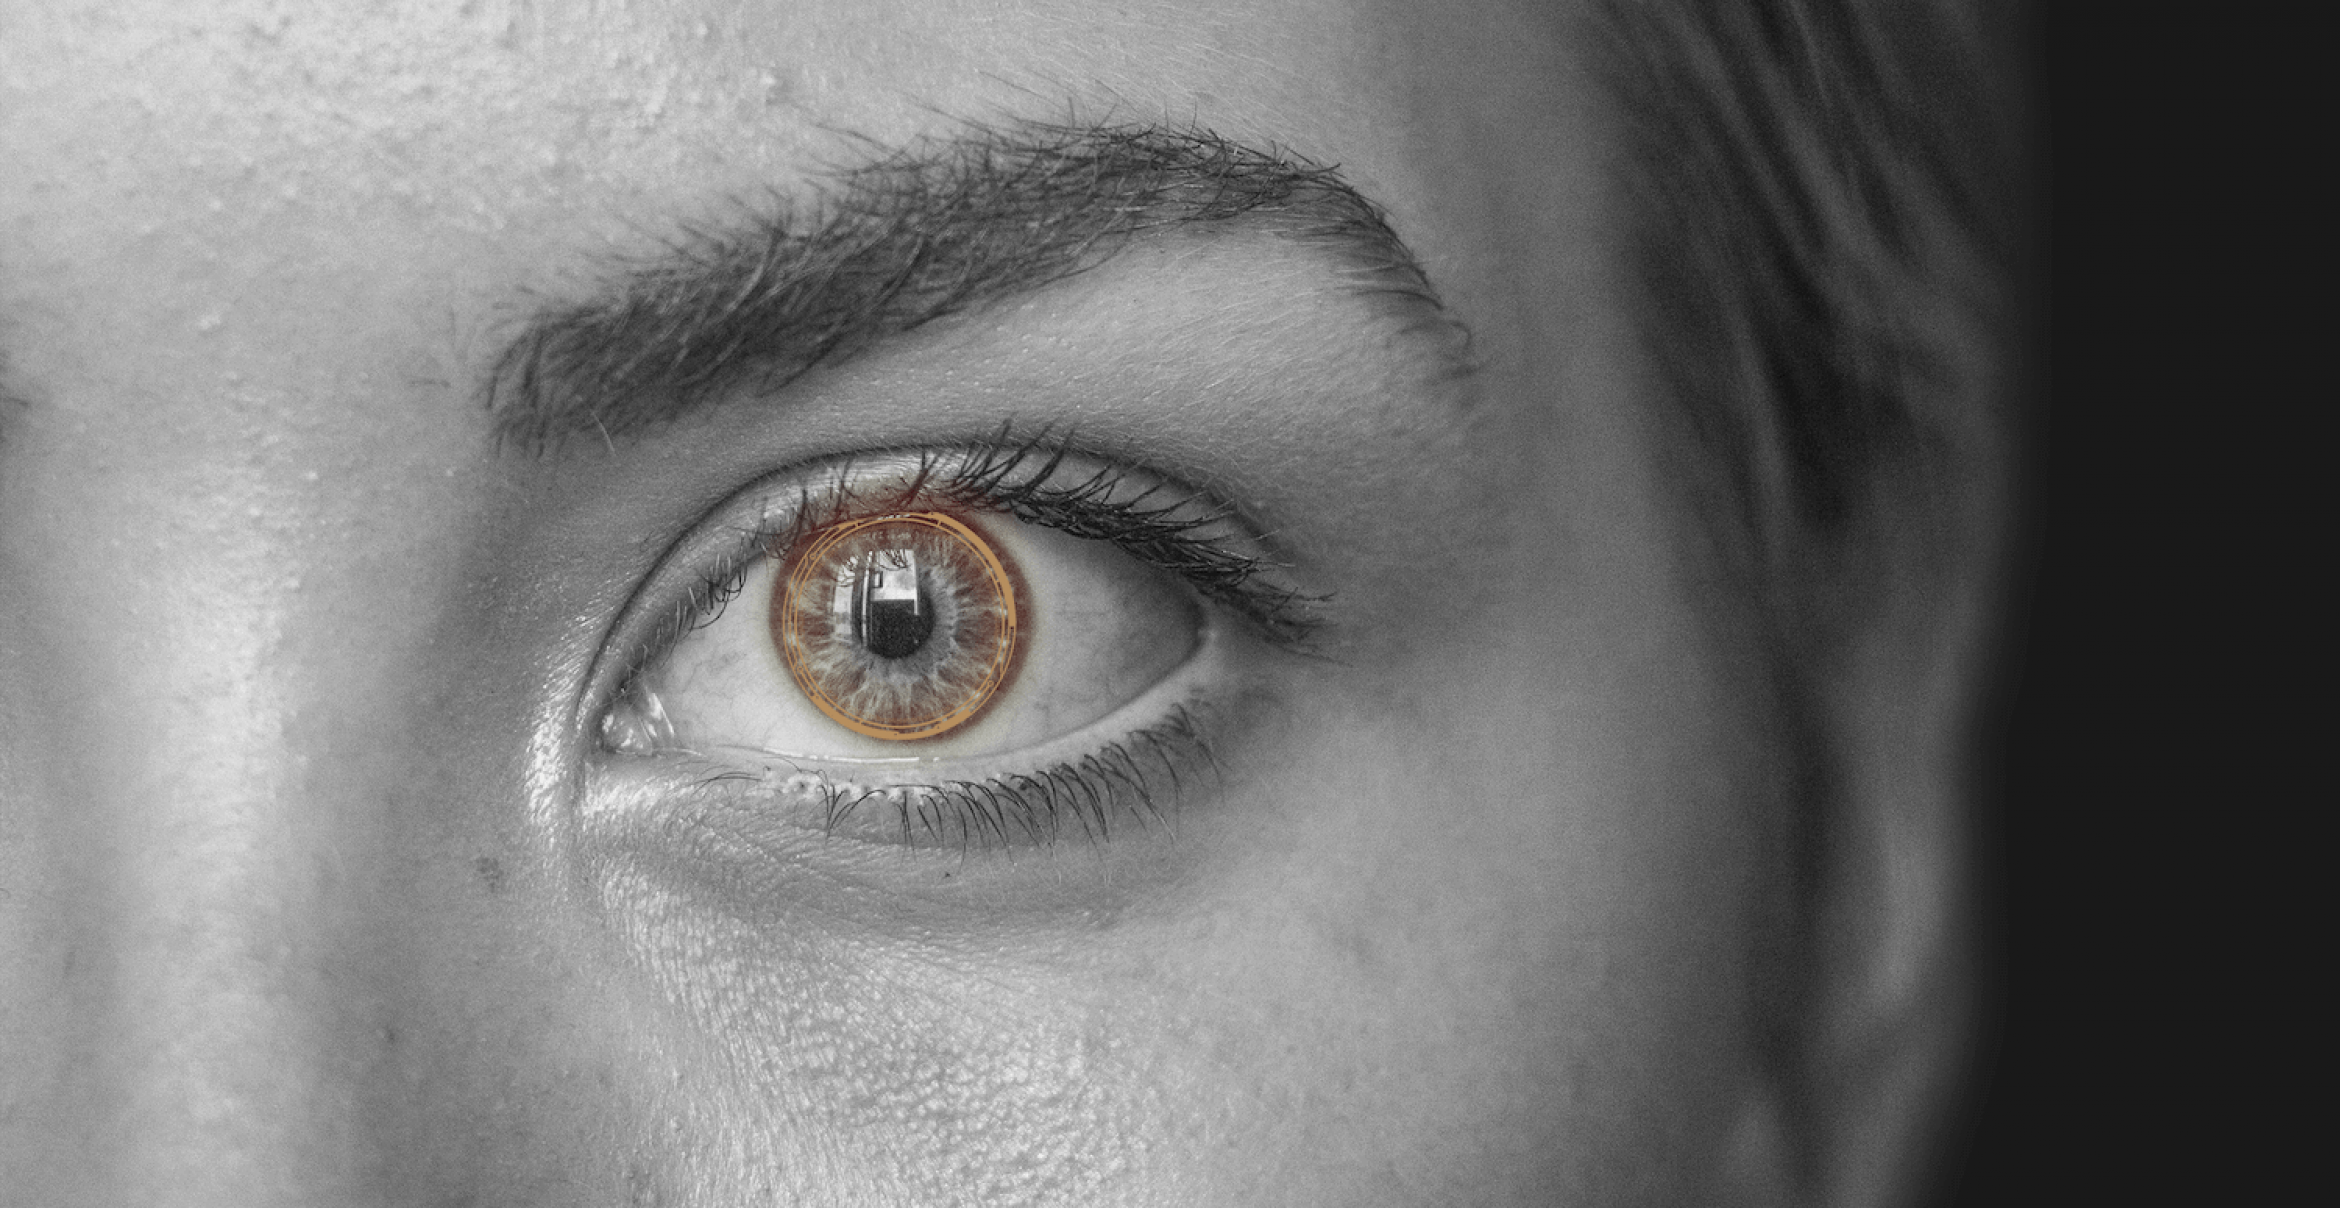 Mit dieser smarten Kontaktlinse kann man Fotos machen und zoomen